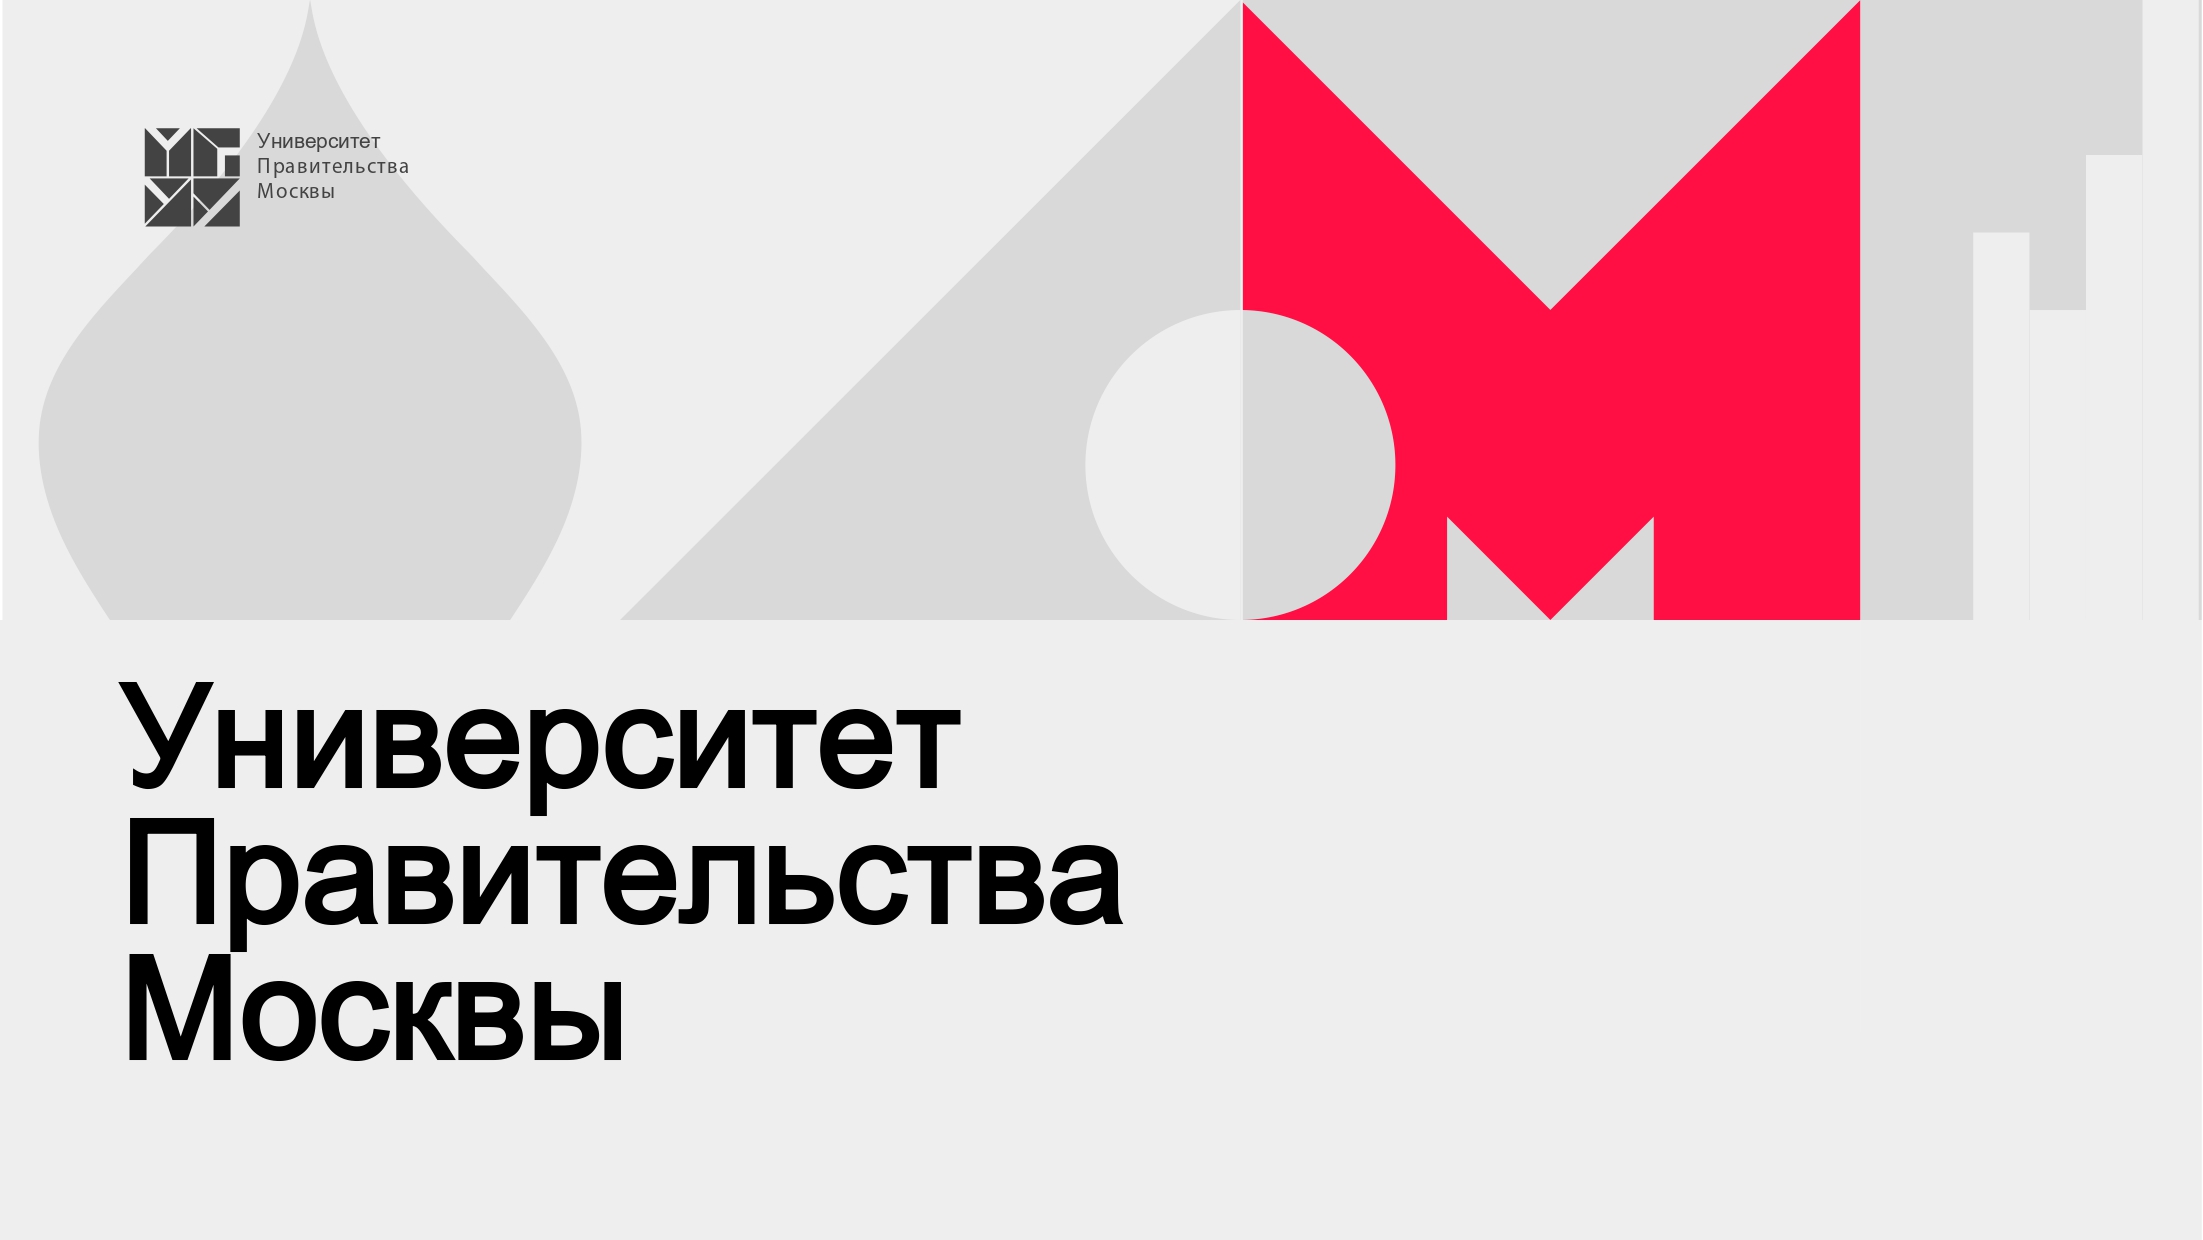 Онлайн-встреча, посвященная Университету Правительства Москвы.